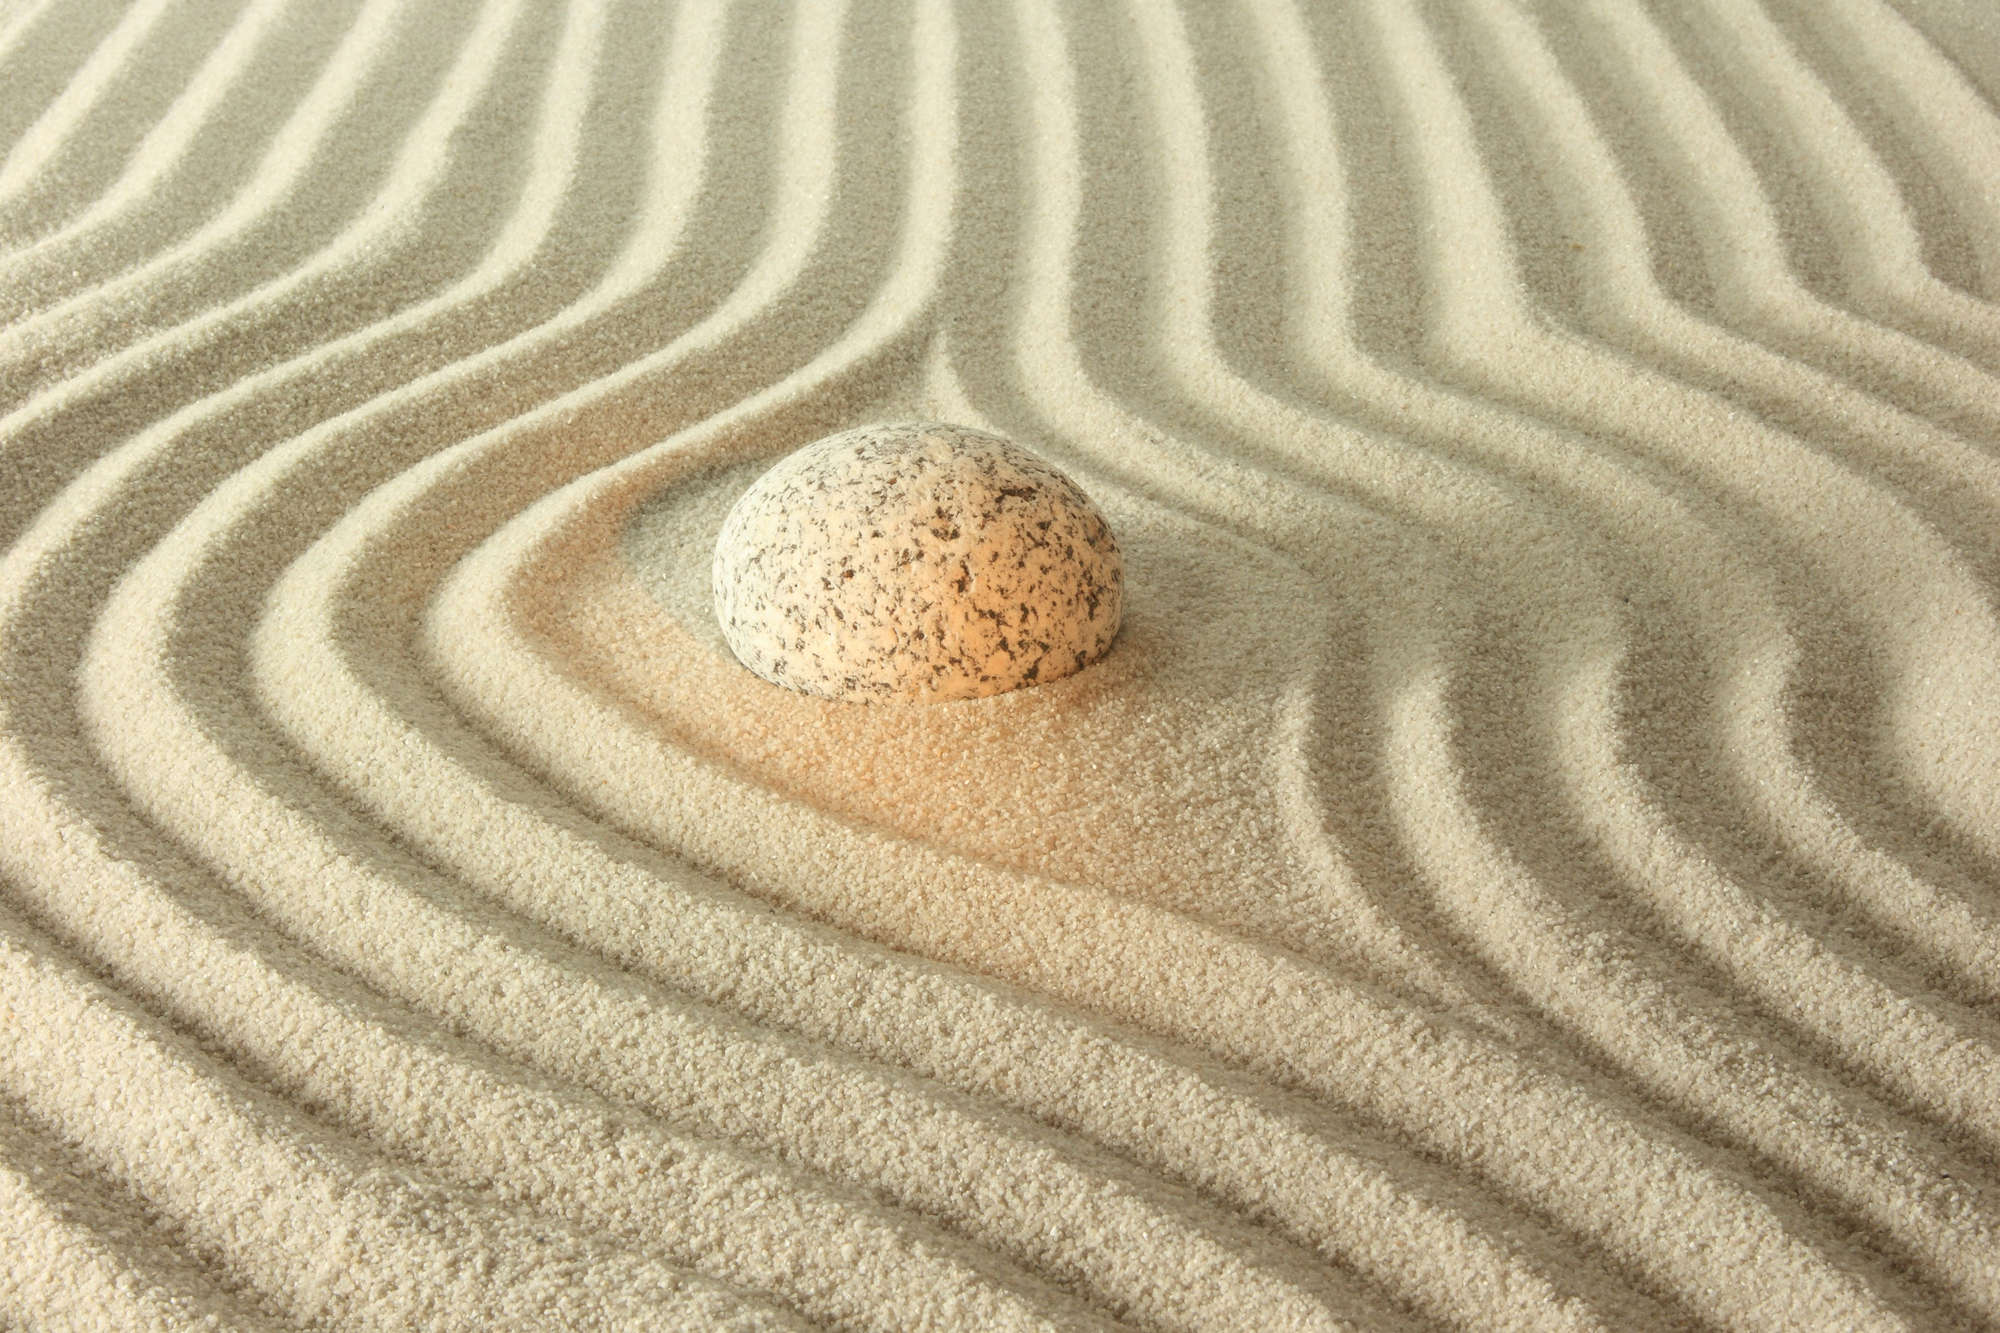             Spa Fototapete gelber Stein in geriffeltem Sand auf Perlmutt Glattvlies
        